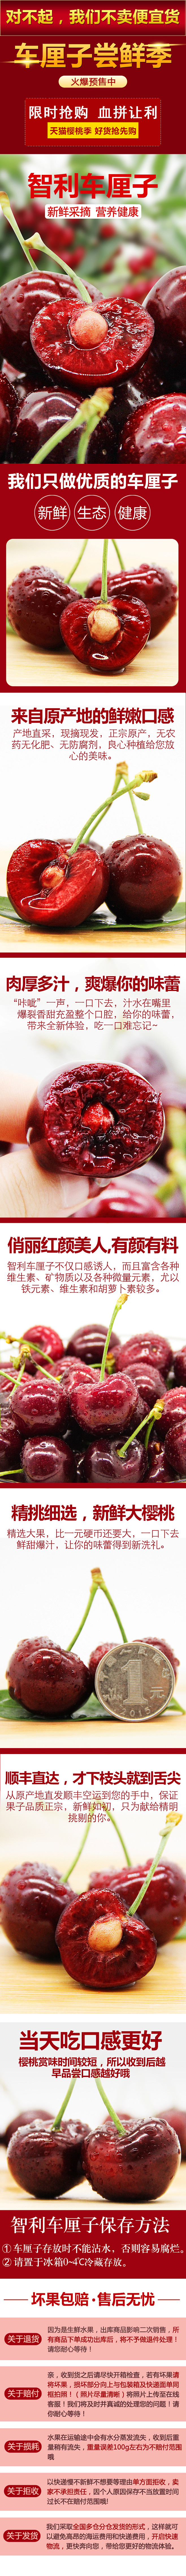 红樱桃车厘子水果详情页